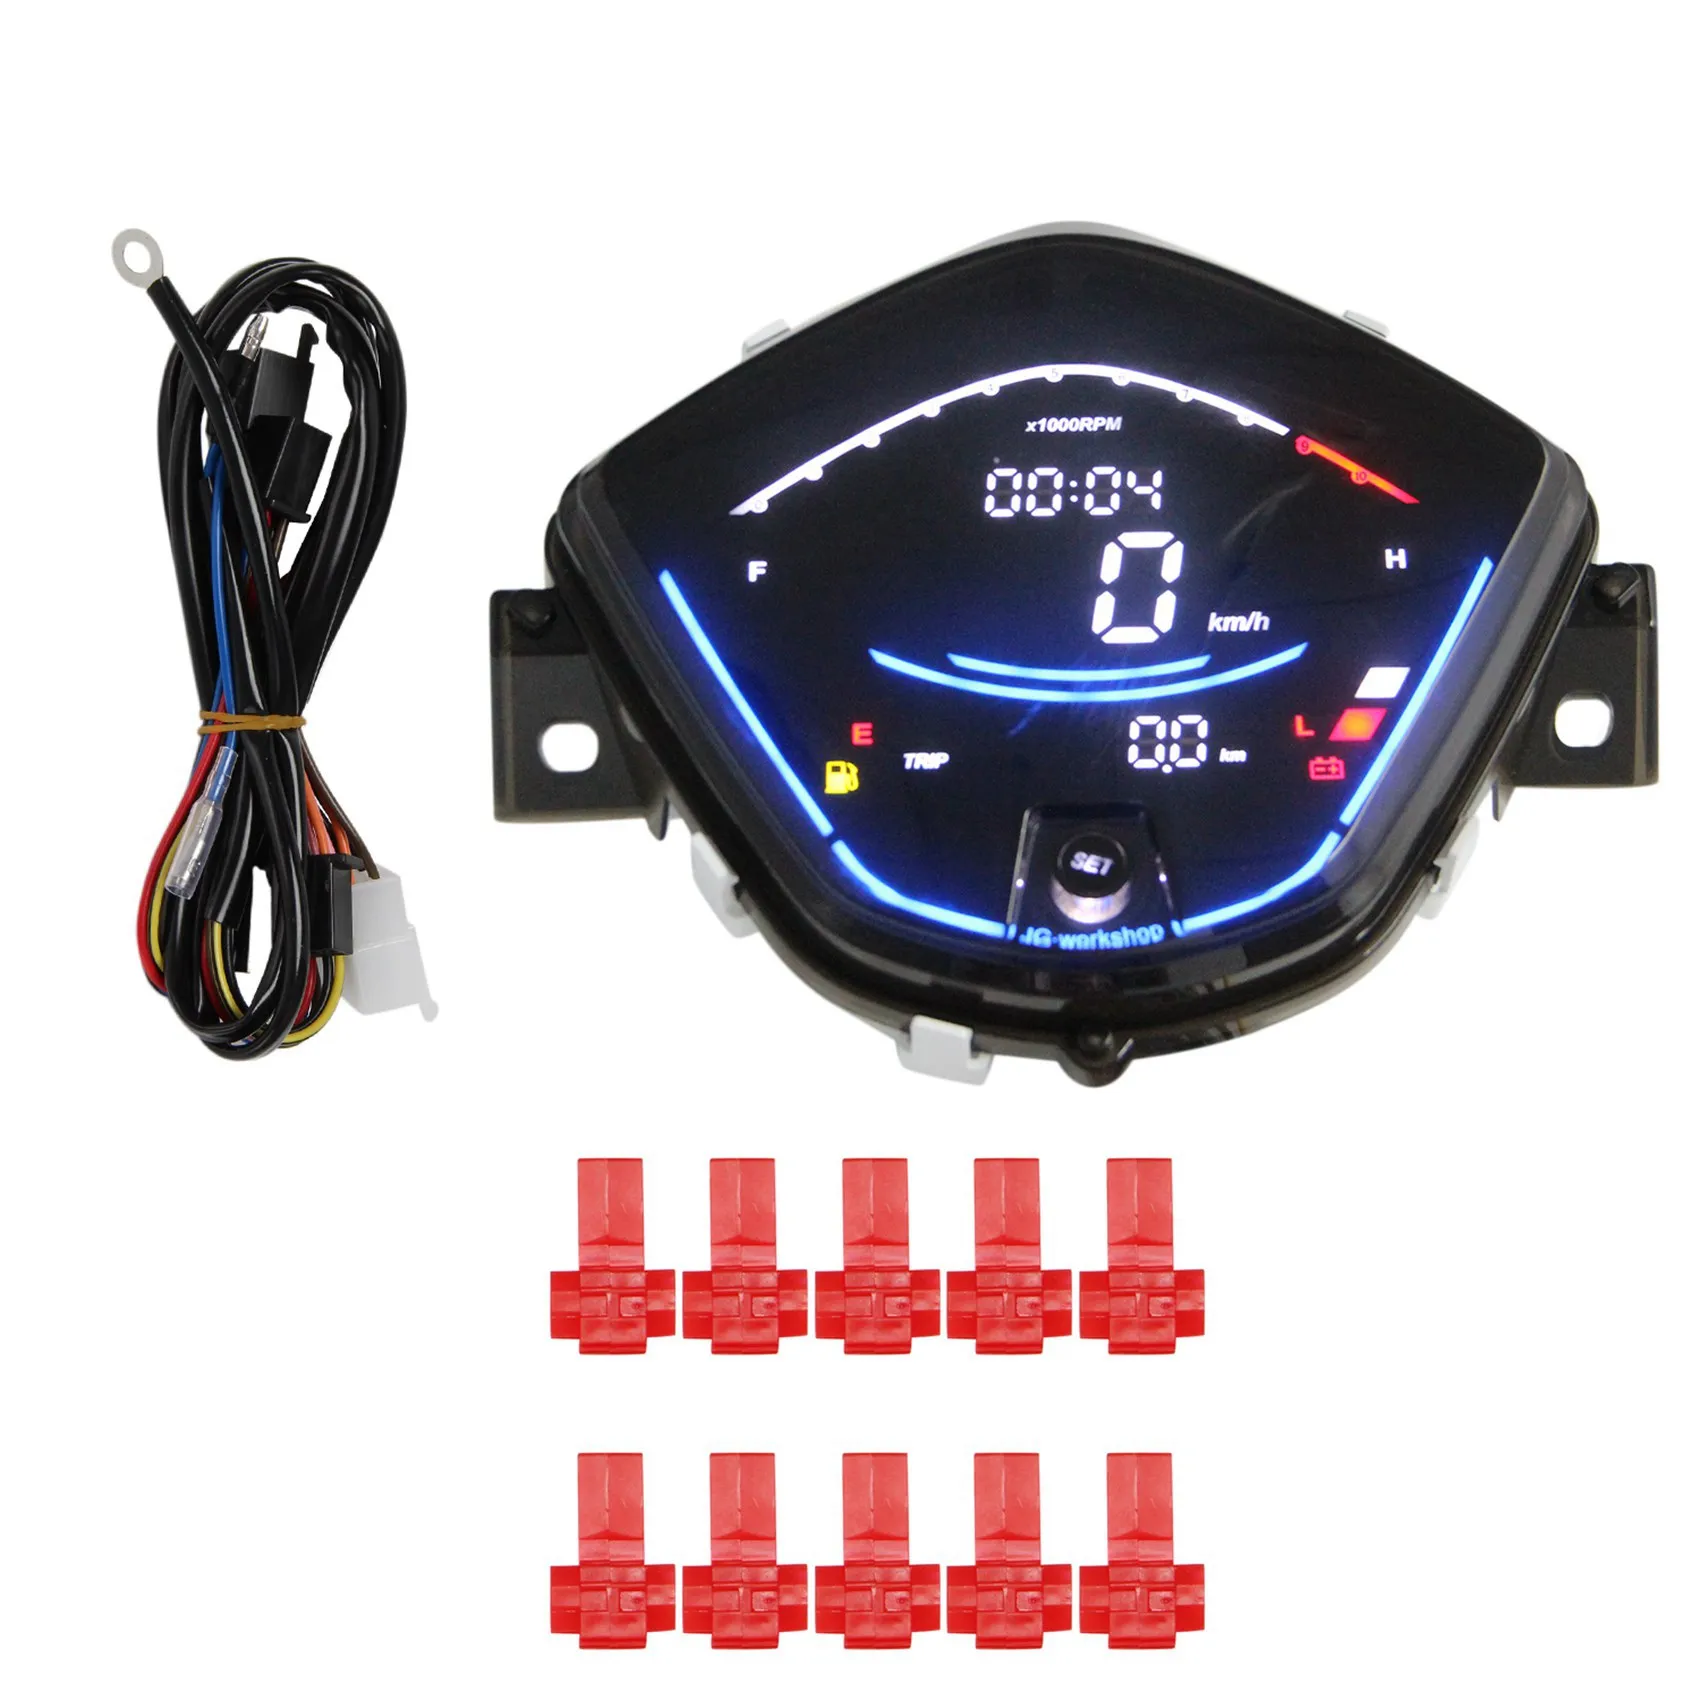 

For Honda Wave110 Wave110Rs 110Rs Digital Meter Motorcycle Tachometer Digital Speedometer LCD Odometer